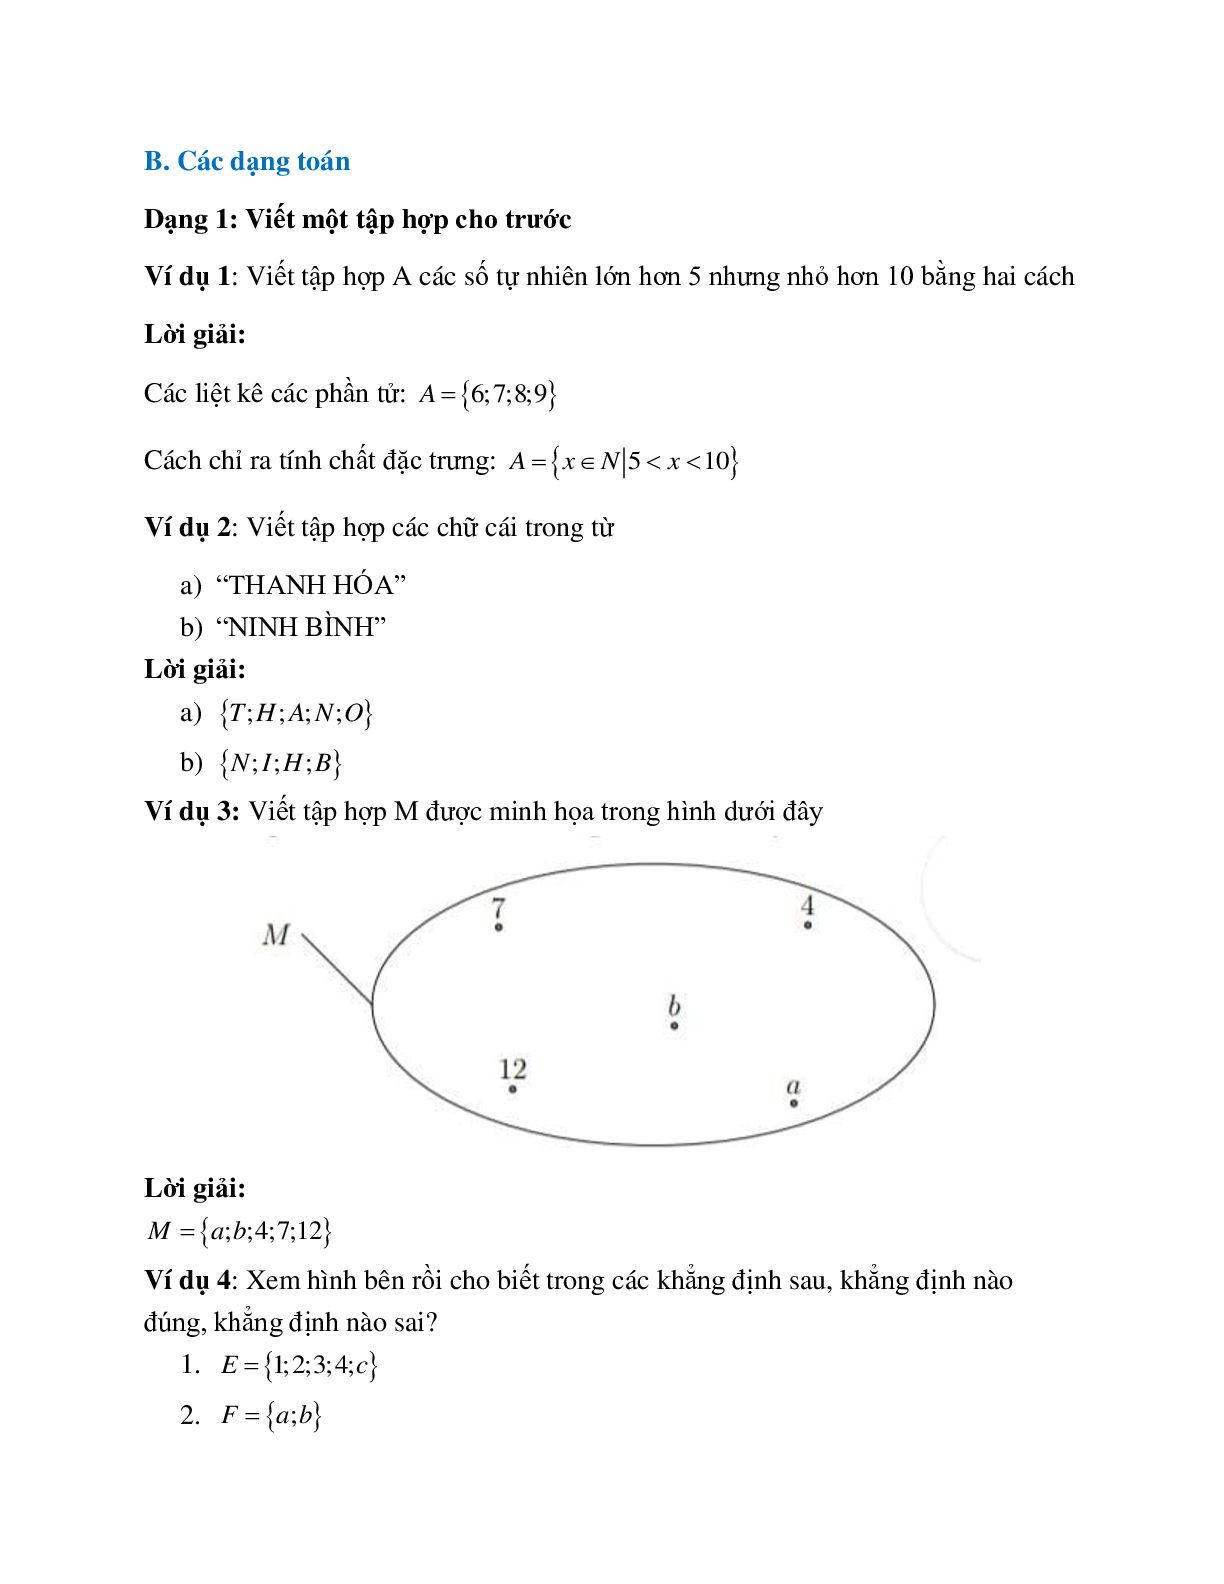 Lý thuyết, bài tập về Tập hợp - Các phần tử của tập hợp có lời giải (trang 2)